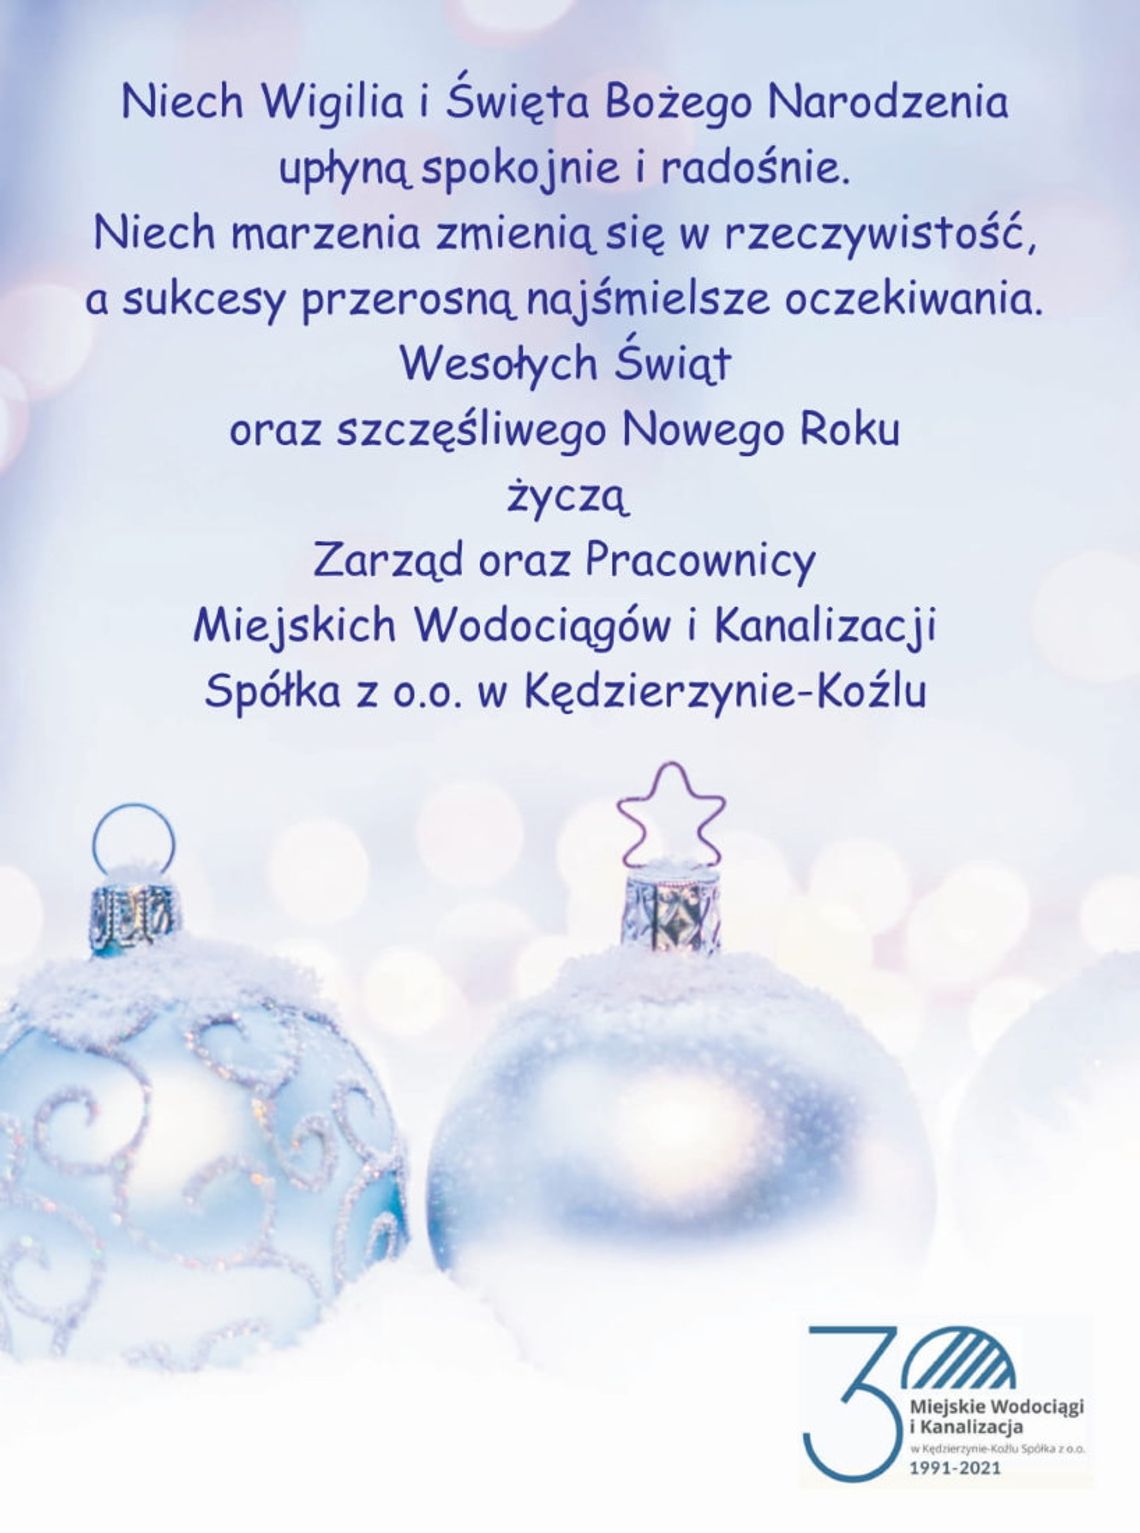 Życzenia bożonarodzeniowe i noworoczne spółki Miejskie Wodociągi i Kanalizacja dla Czytelników KK24.pl